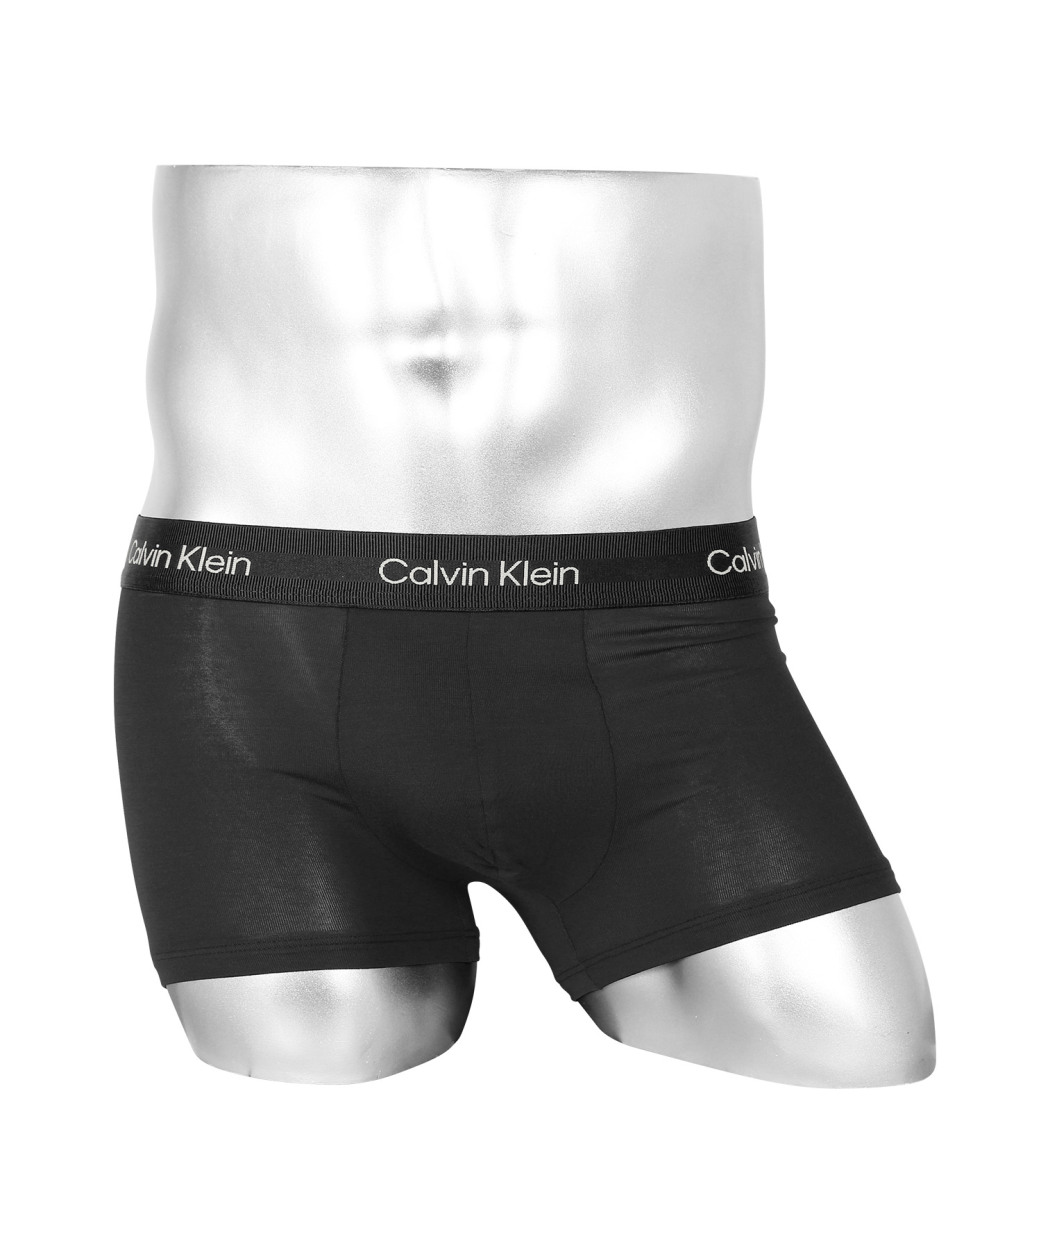 カルバンクライン Calvin Klein ボクサーパンツ メンズ アンダーウェア 男性下着 ツルツ...